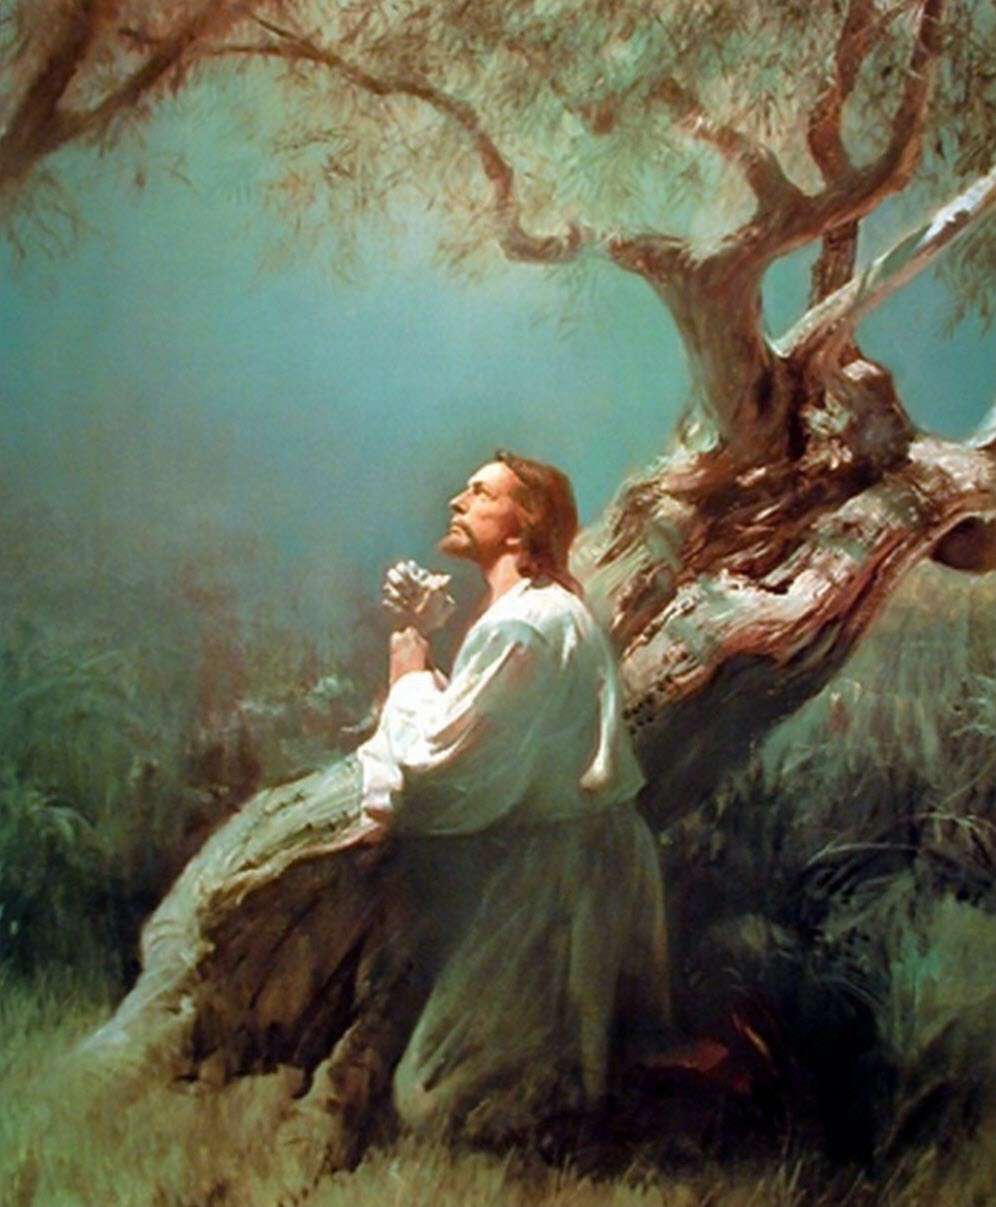 Hình ảnh Chúa Giêsu đang cầu nguyện dưới gốc cây